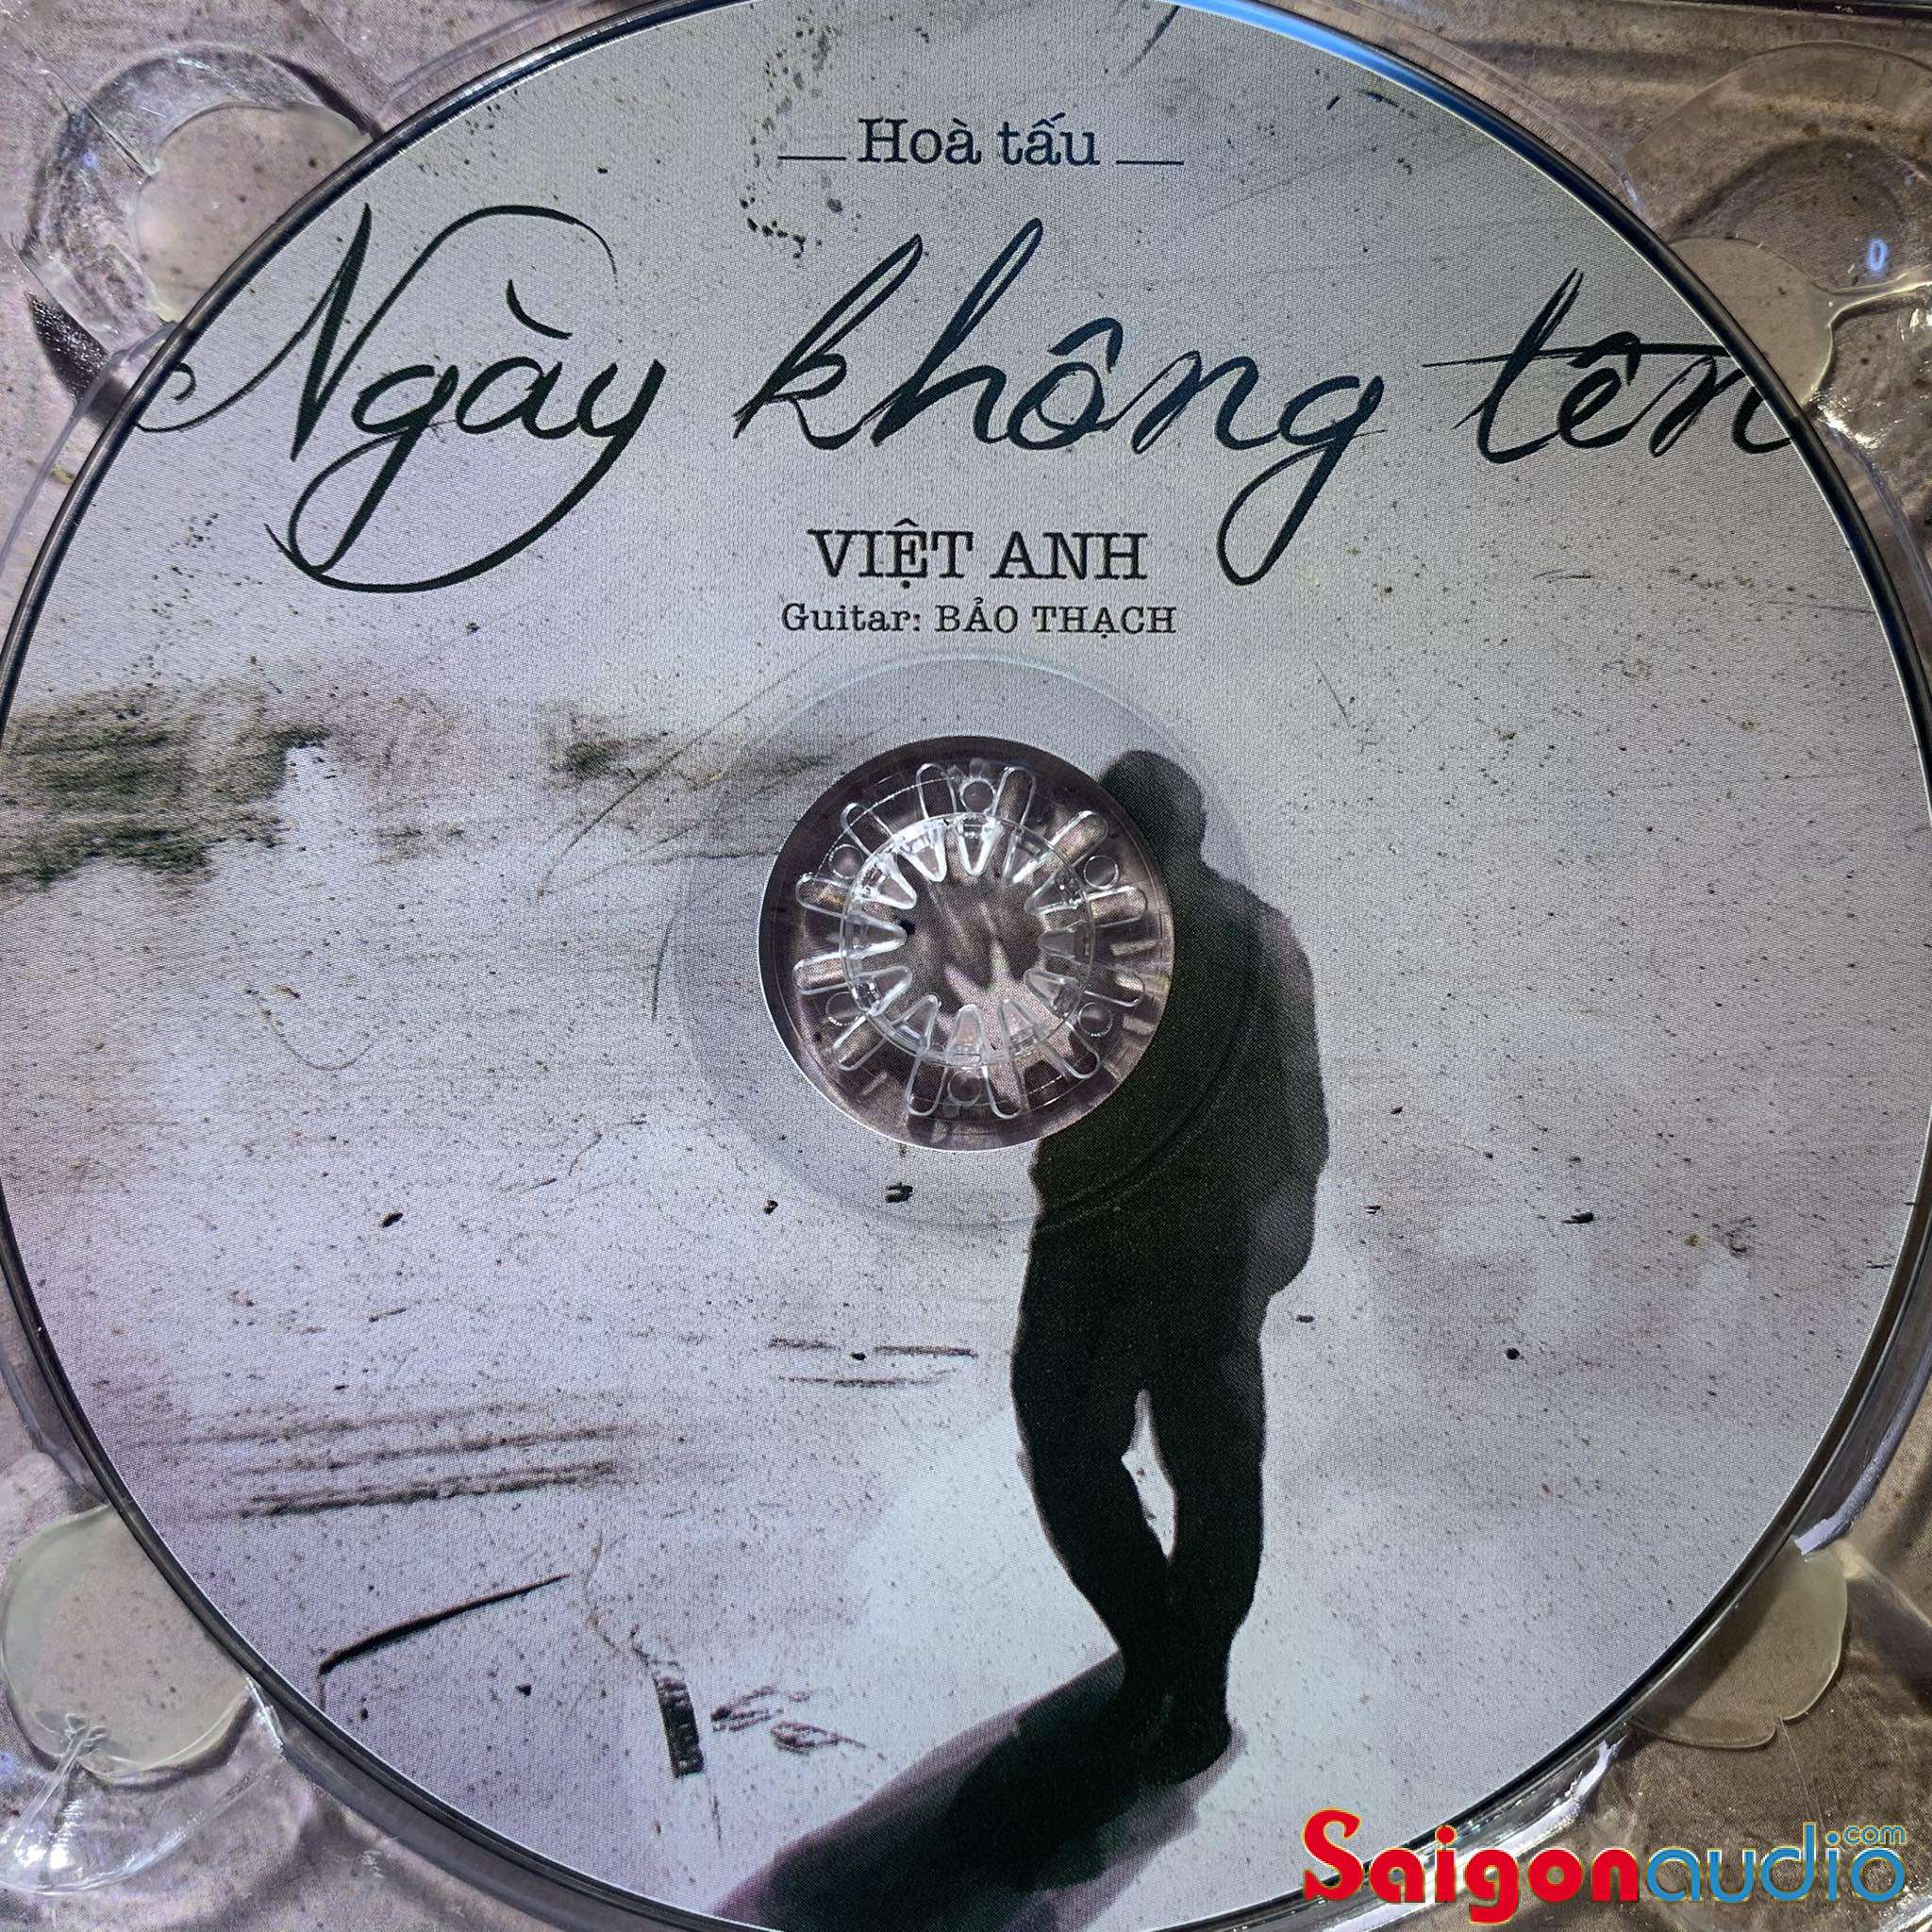 Đĩa CD gốc Việt Anh - Ngày Không Tên - Guitar Bảo Thạch (Free ship khi mua 2 đĩa CD cùng hoặc khác loại)